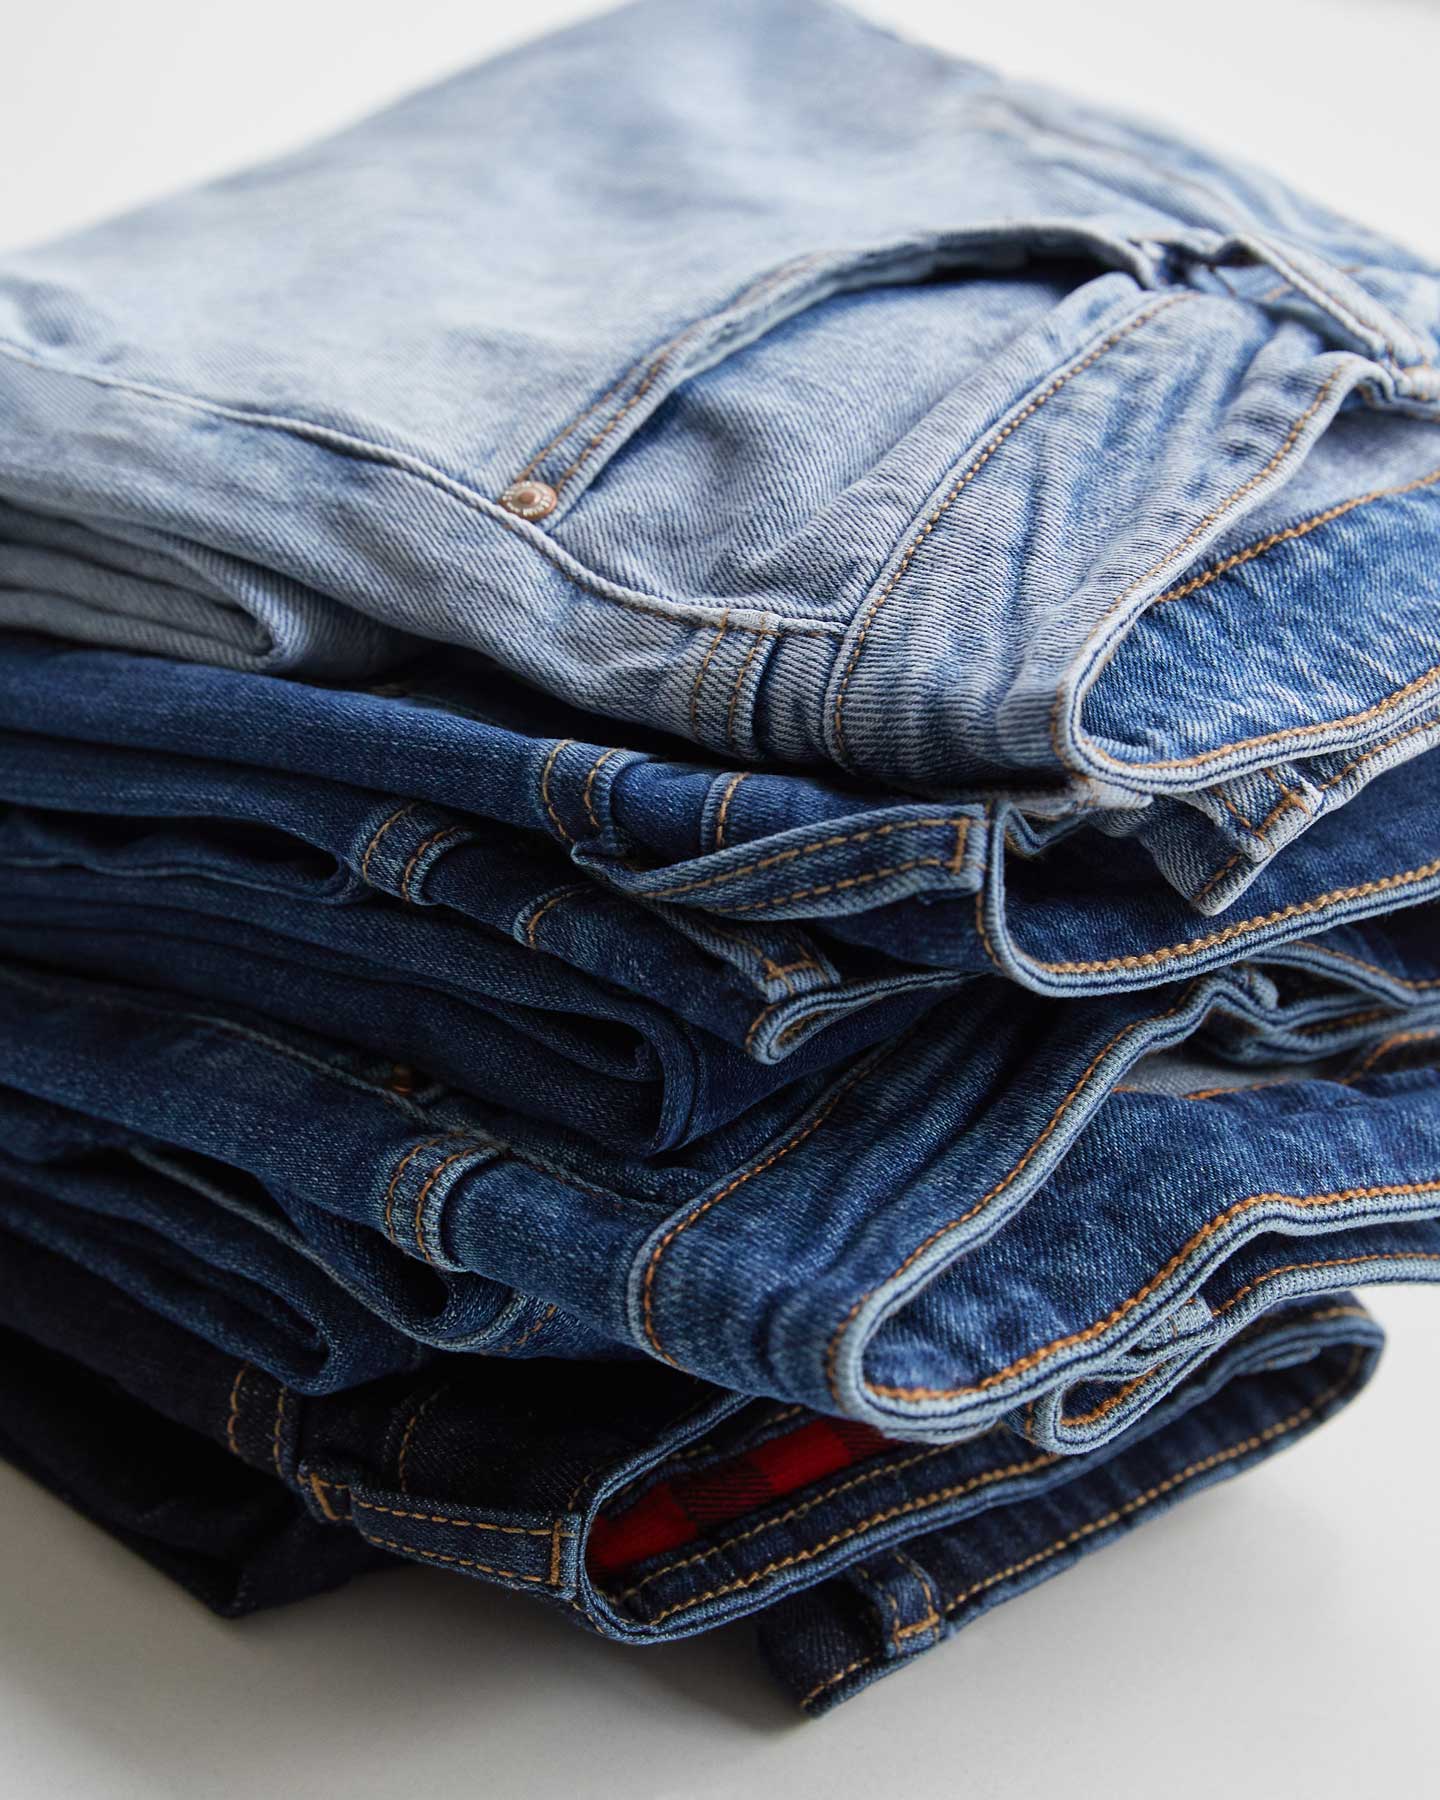 Jeans a la cadera: las tendencias para llevarlos en 2020 y cómo combinarlos